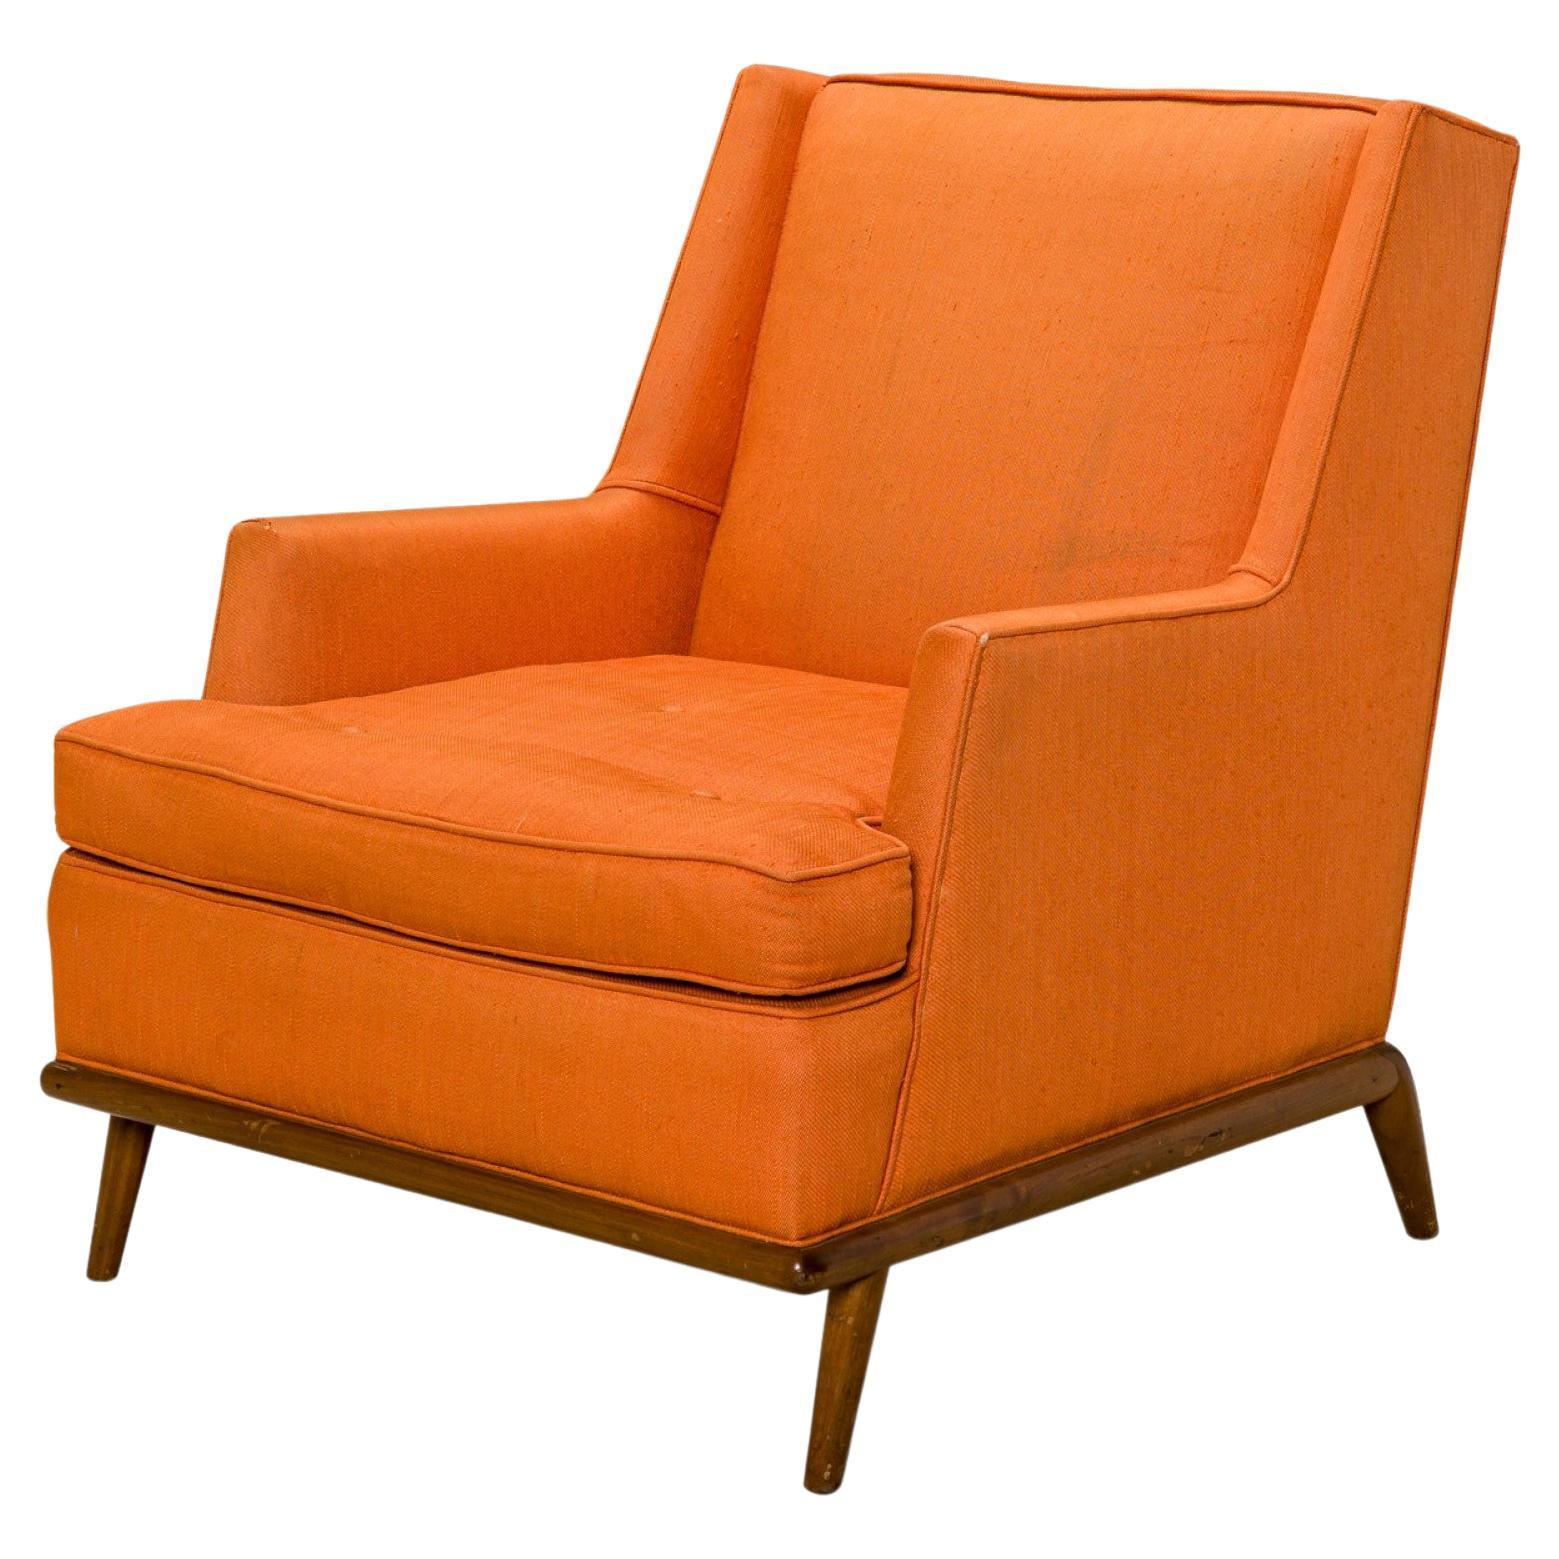 T.H. Robsjohn-Gibbings for Widdicomb High Back Orange Upholstered Lounge Chair